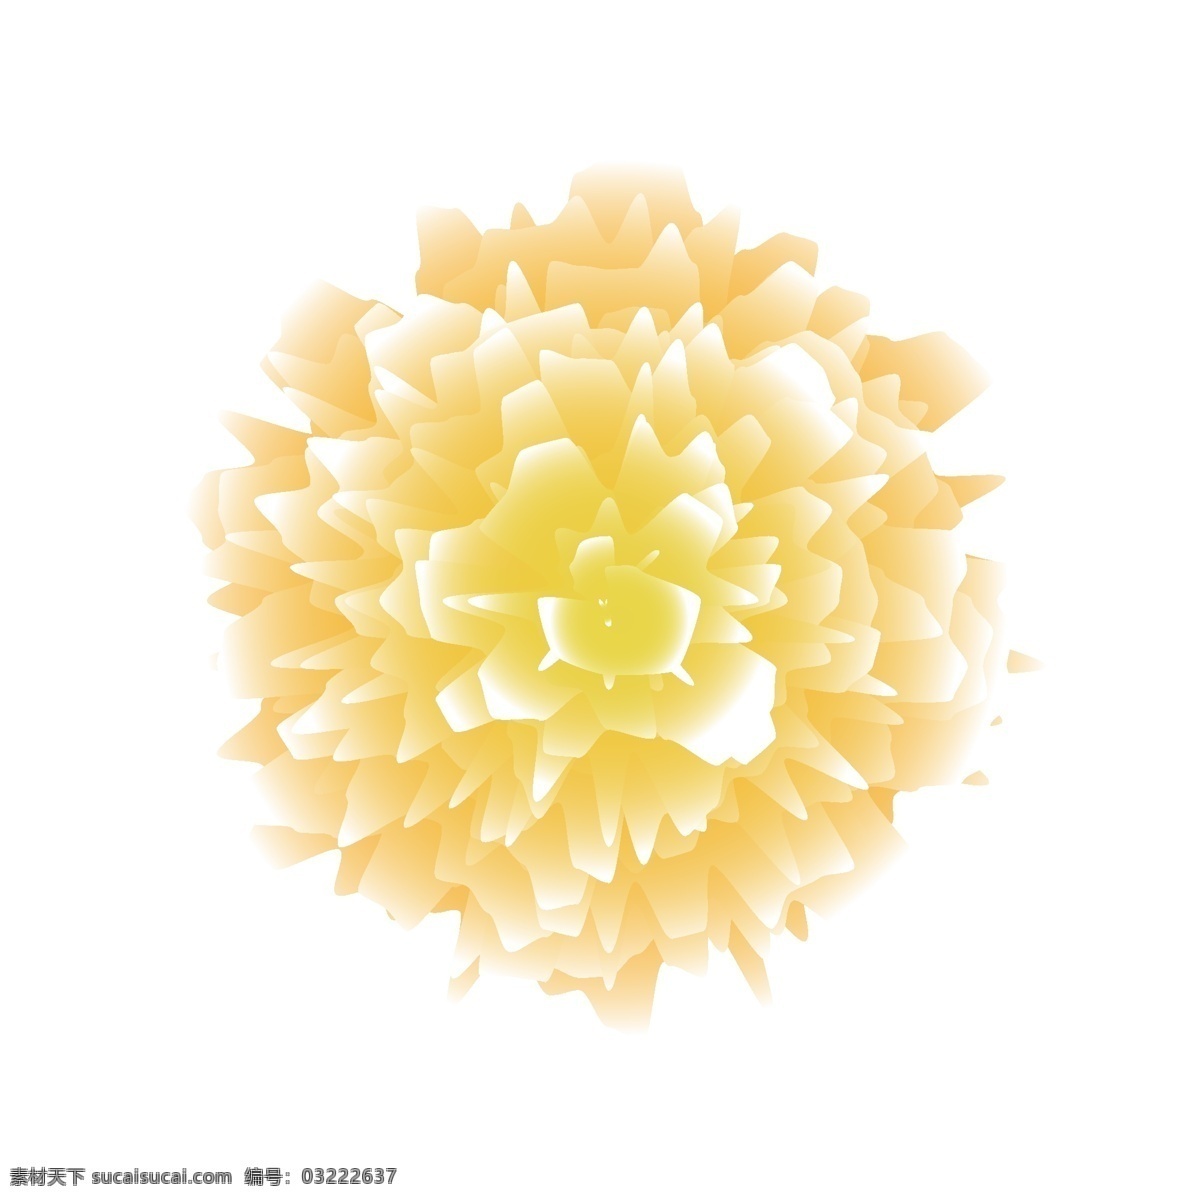 圆形 饱满 浅黄色 绚烂 花朵 图案 装饰 元素 原创